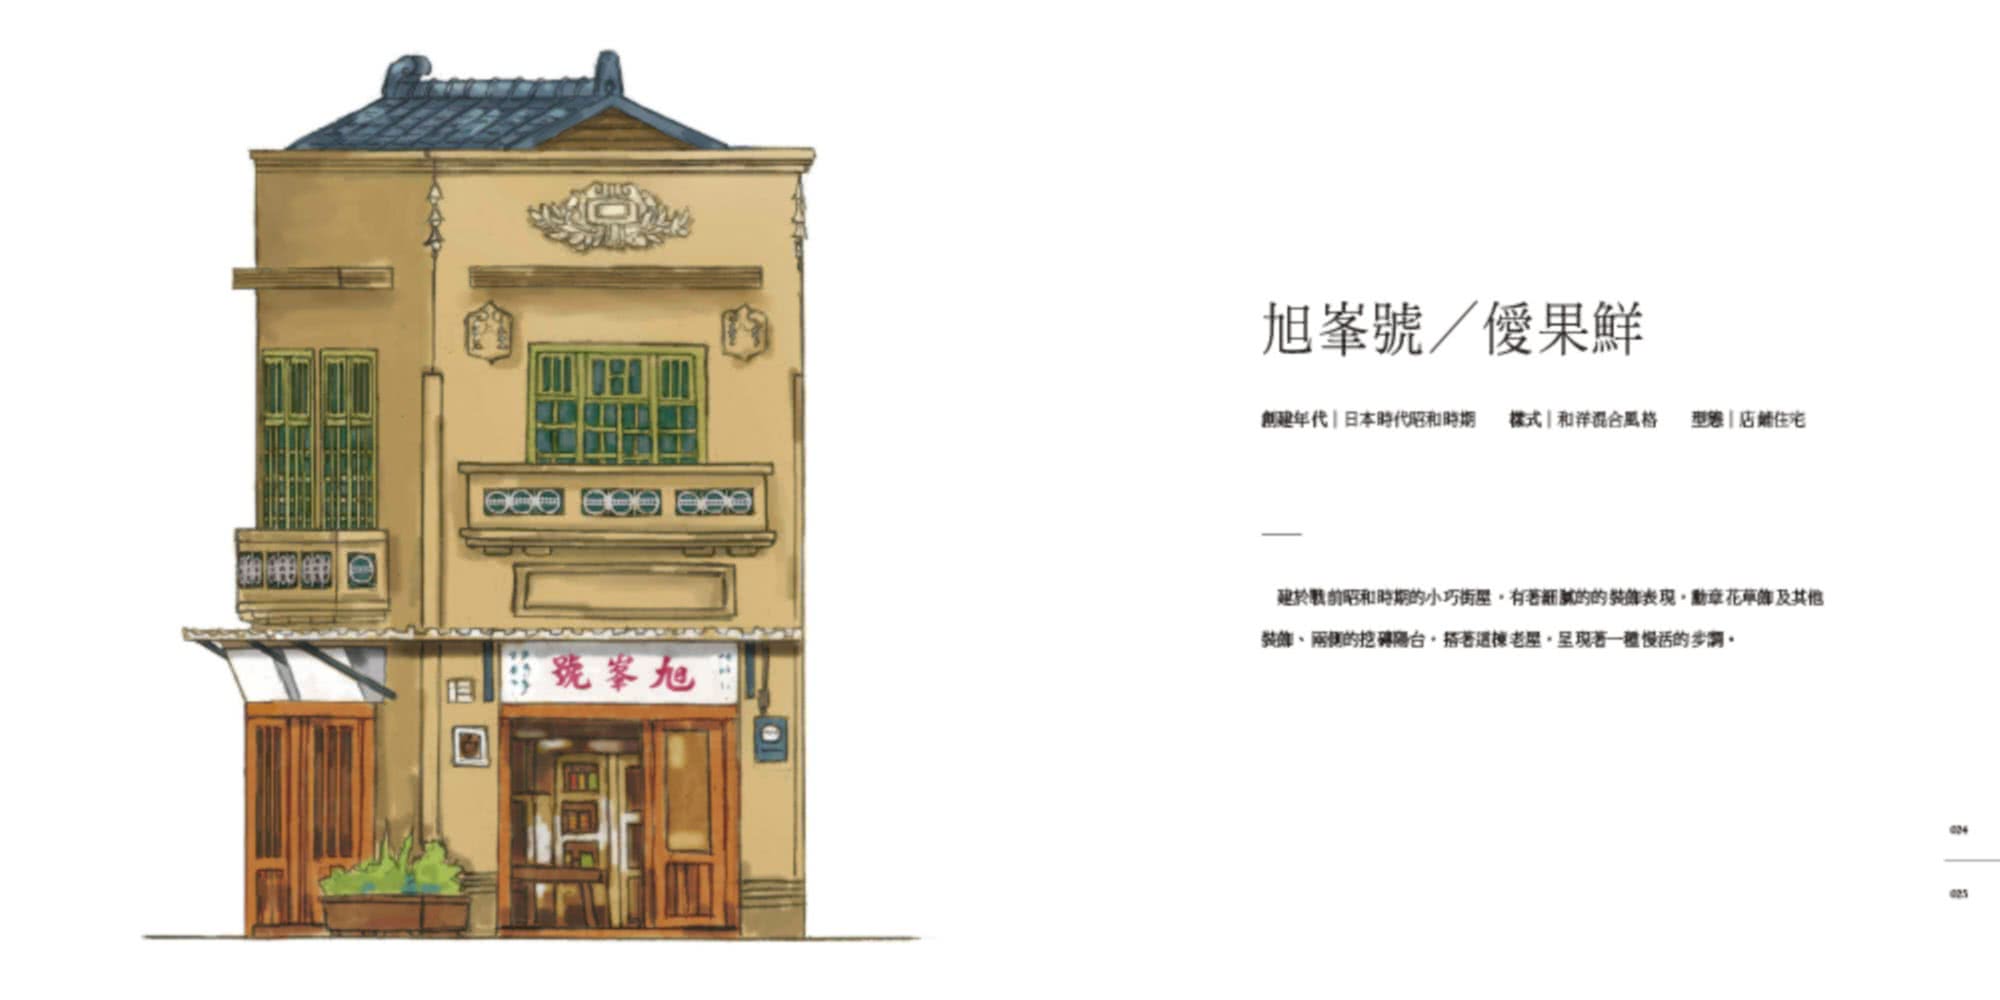 台南街屋：73處老屋之美，體現台灣百年常民生活美學印記